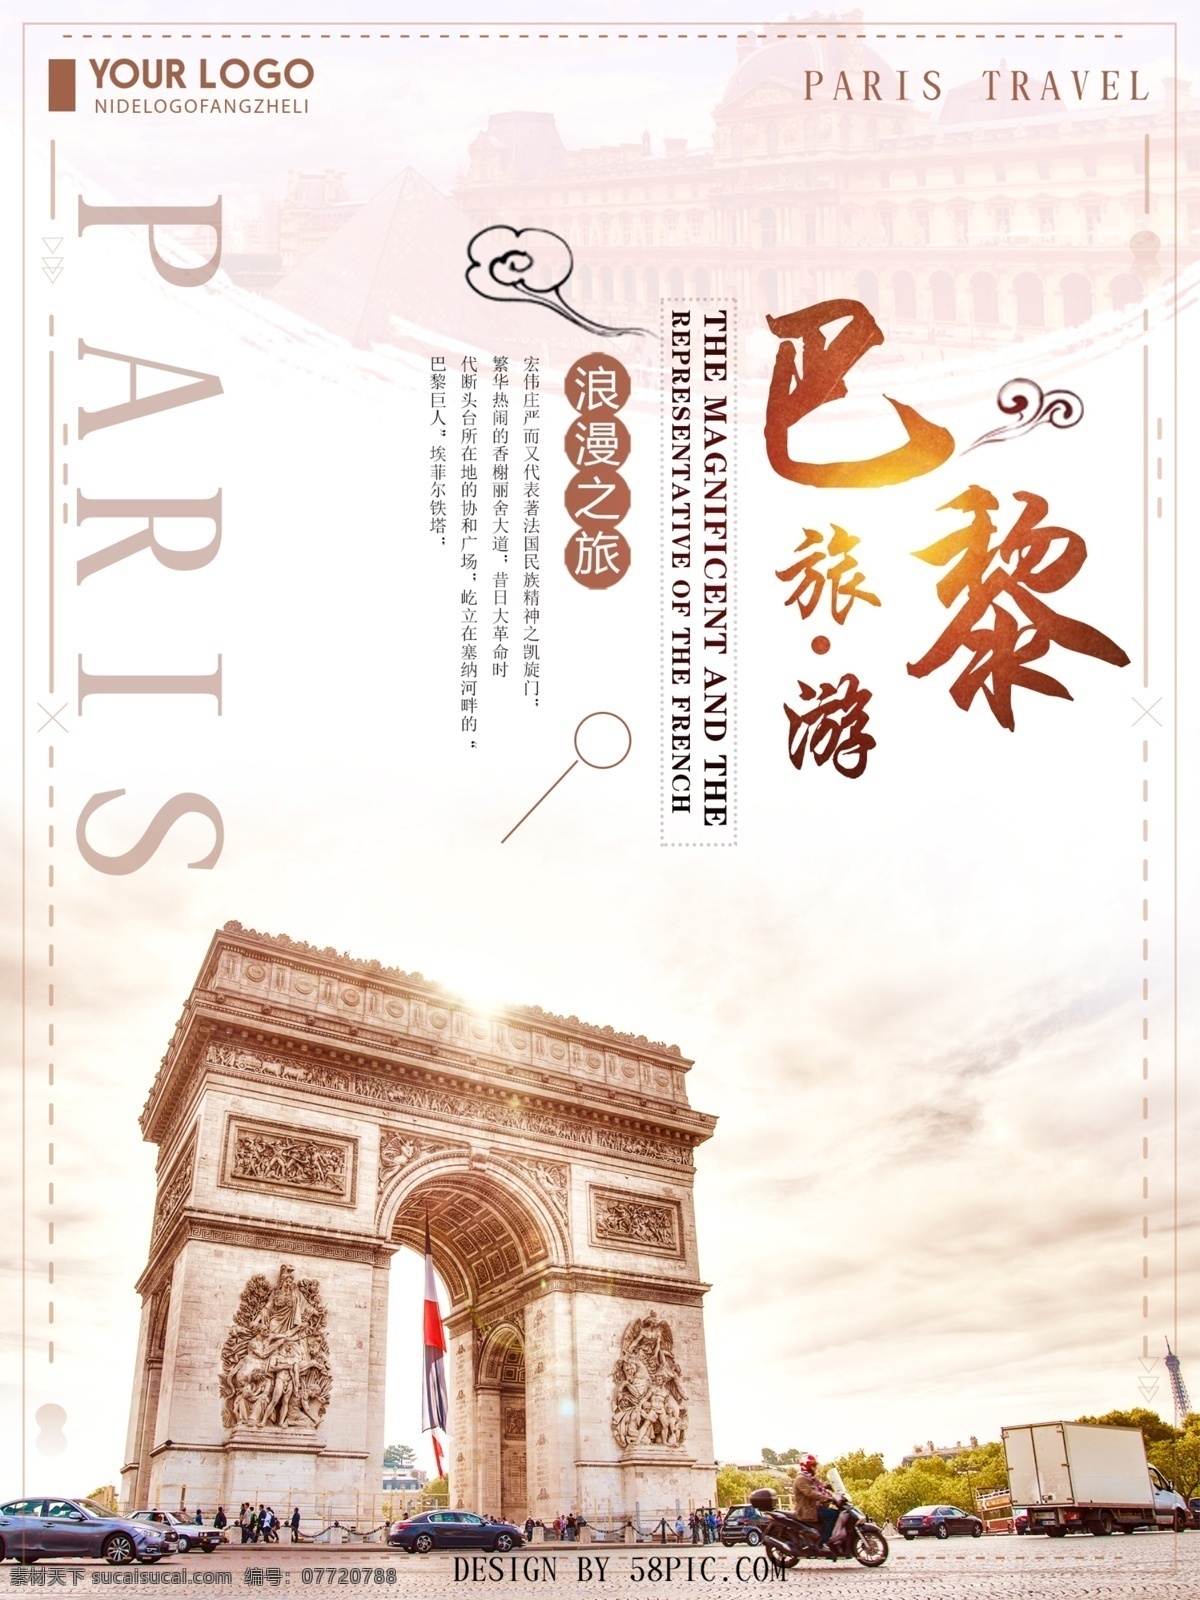 唯美 巴黎 旅游 文艺旅游海报 旅游海报设计 欧洲旅游 巴黎旅游